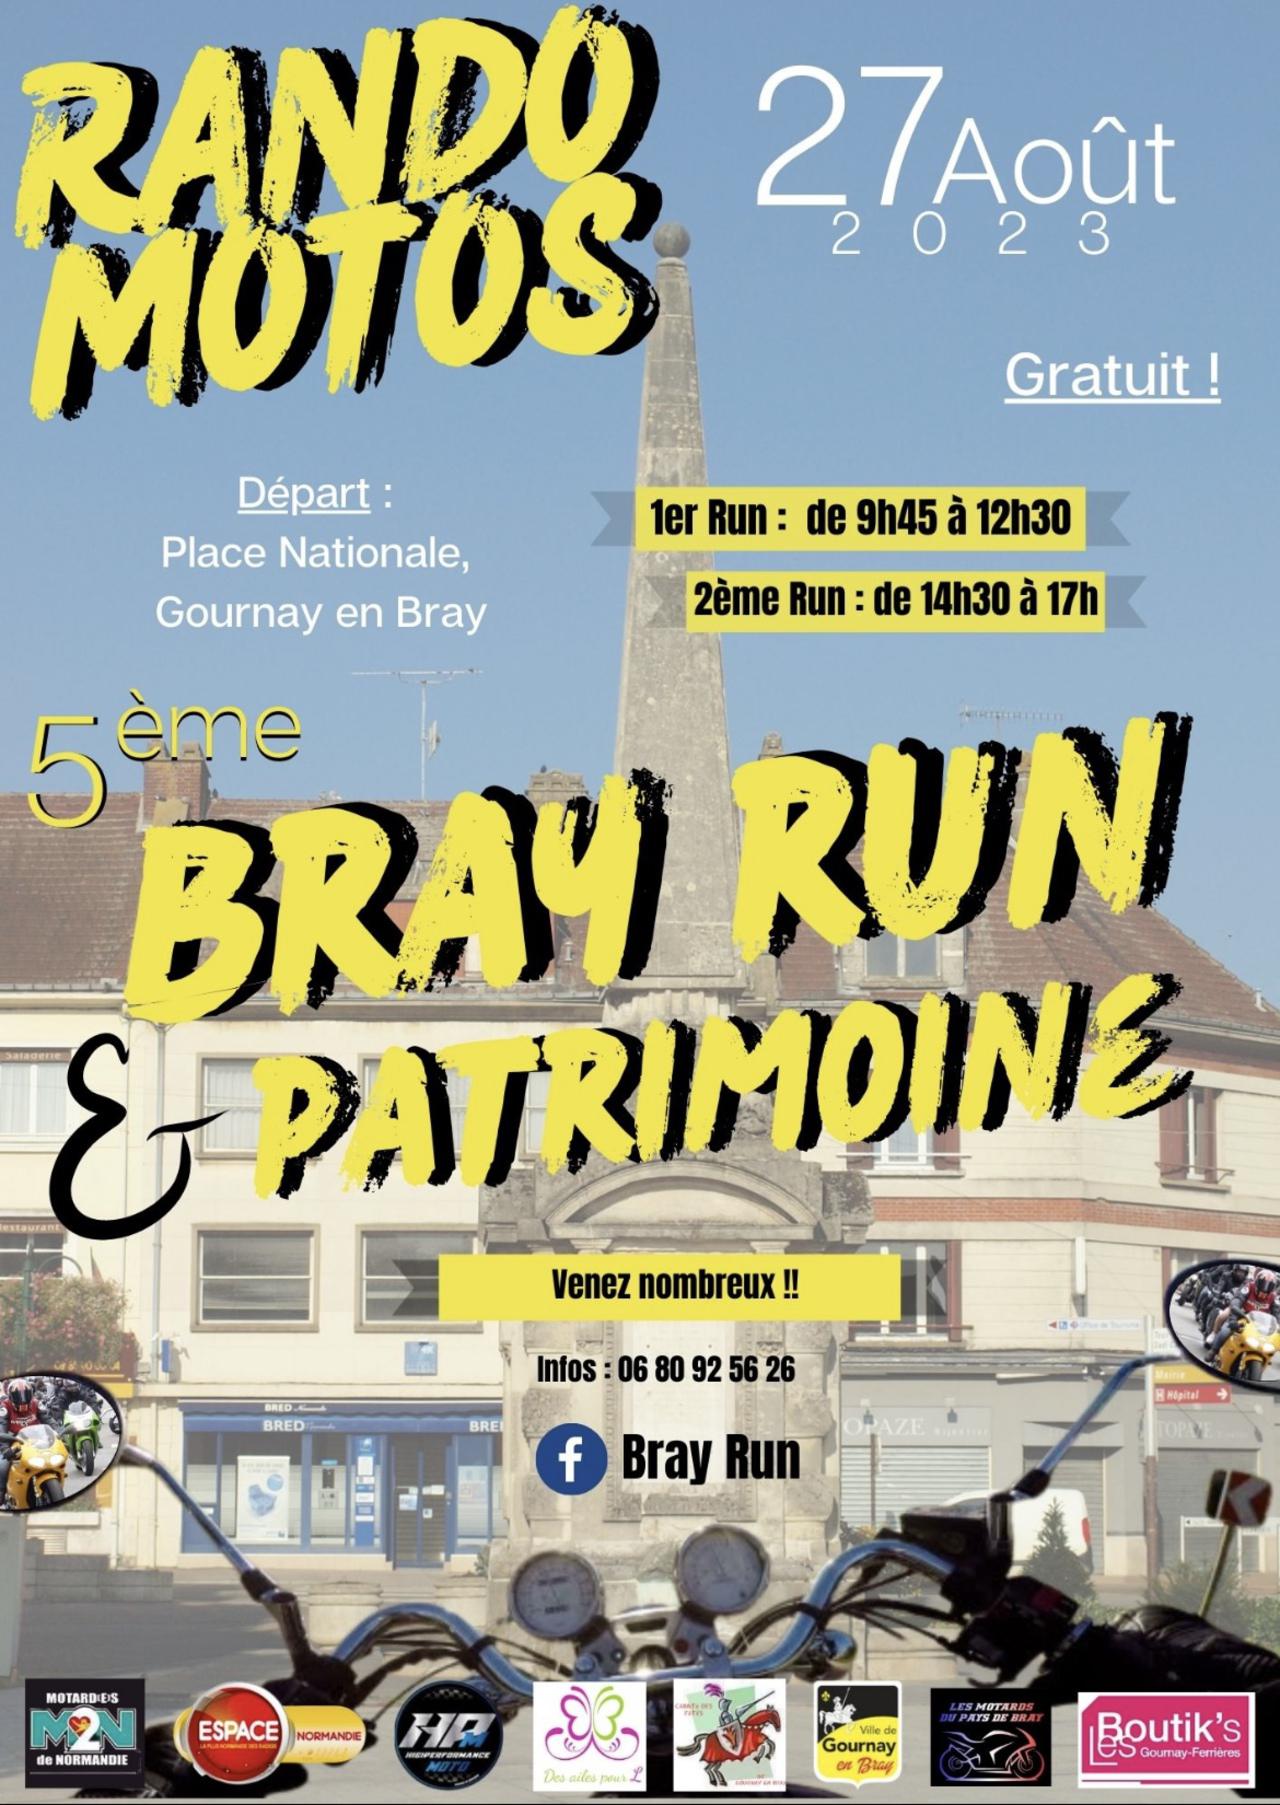 5ème Bray Run, Rando Moto, à Gournay-En-Bray, DImanche 27 Août, avec Espace !